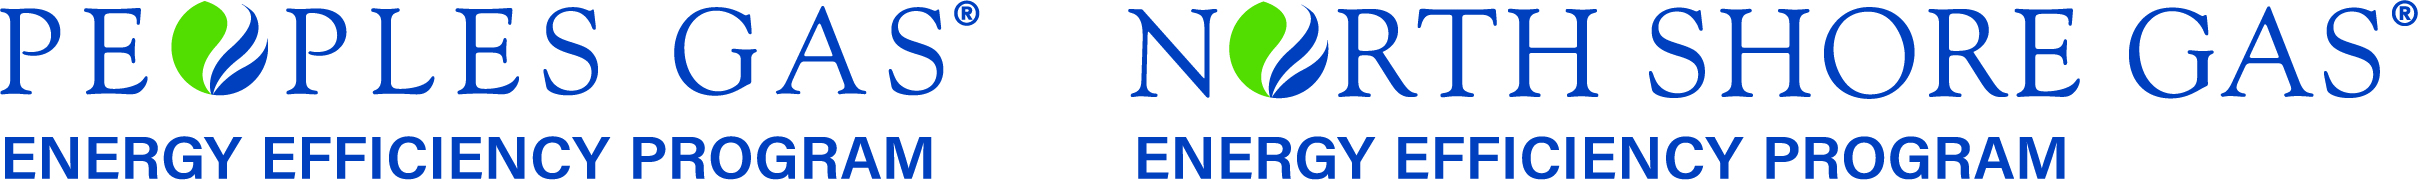 Peoples Gas Home Energy Rebate Program Waitlist